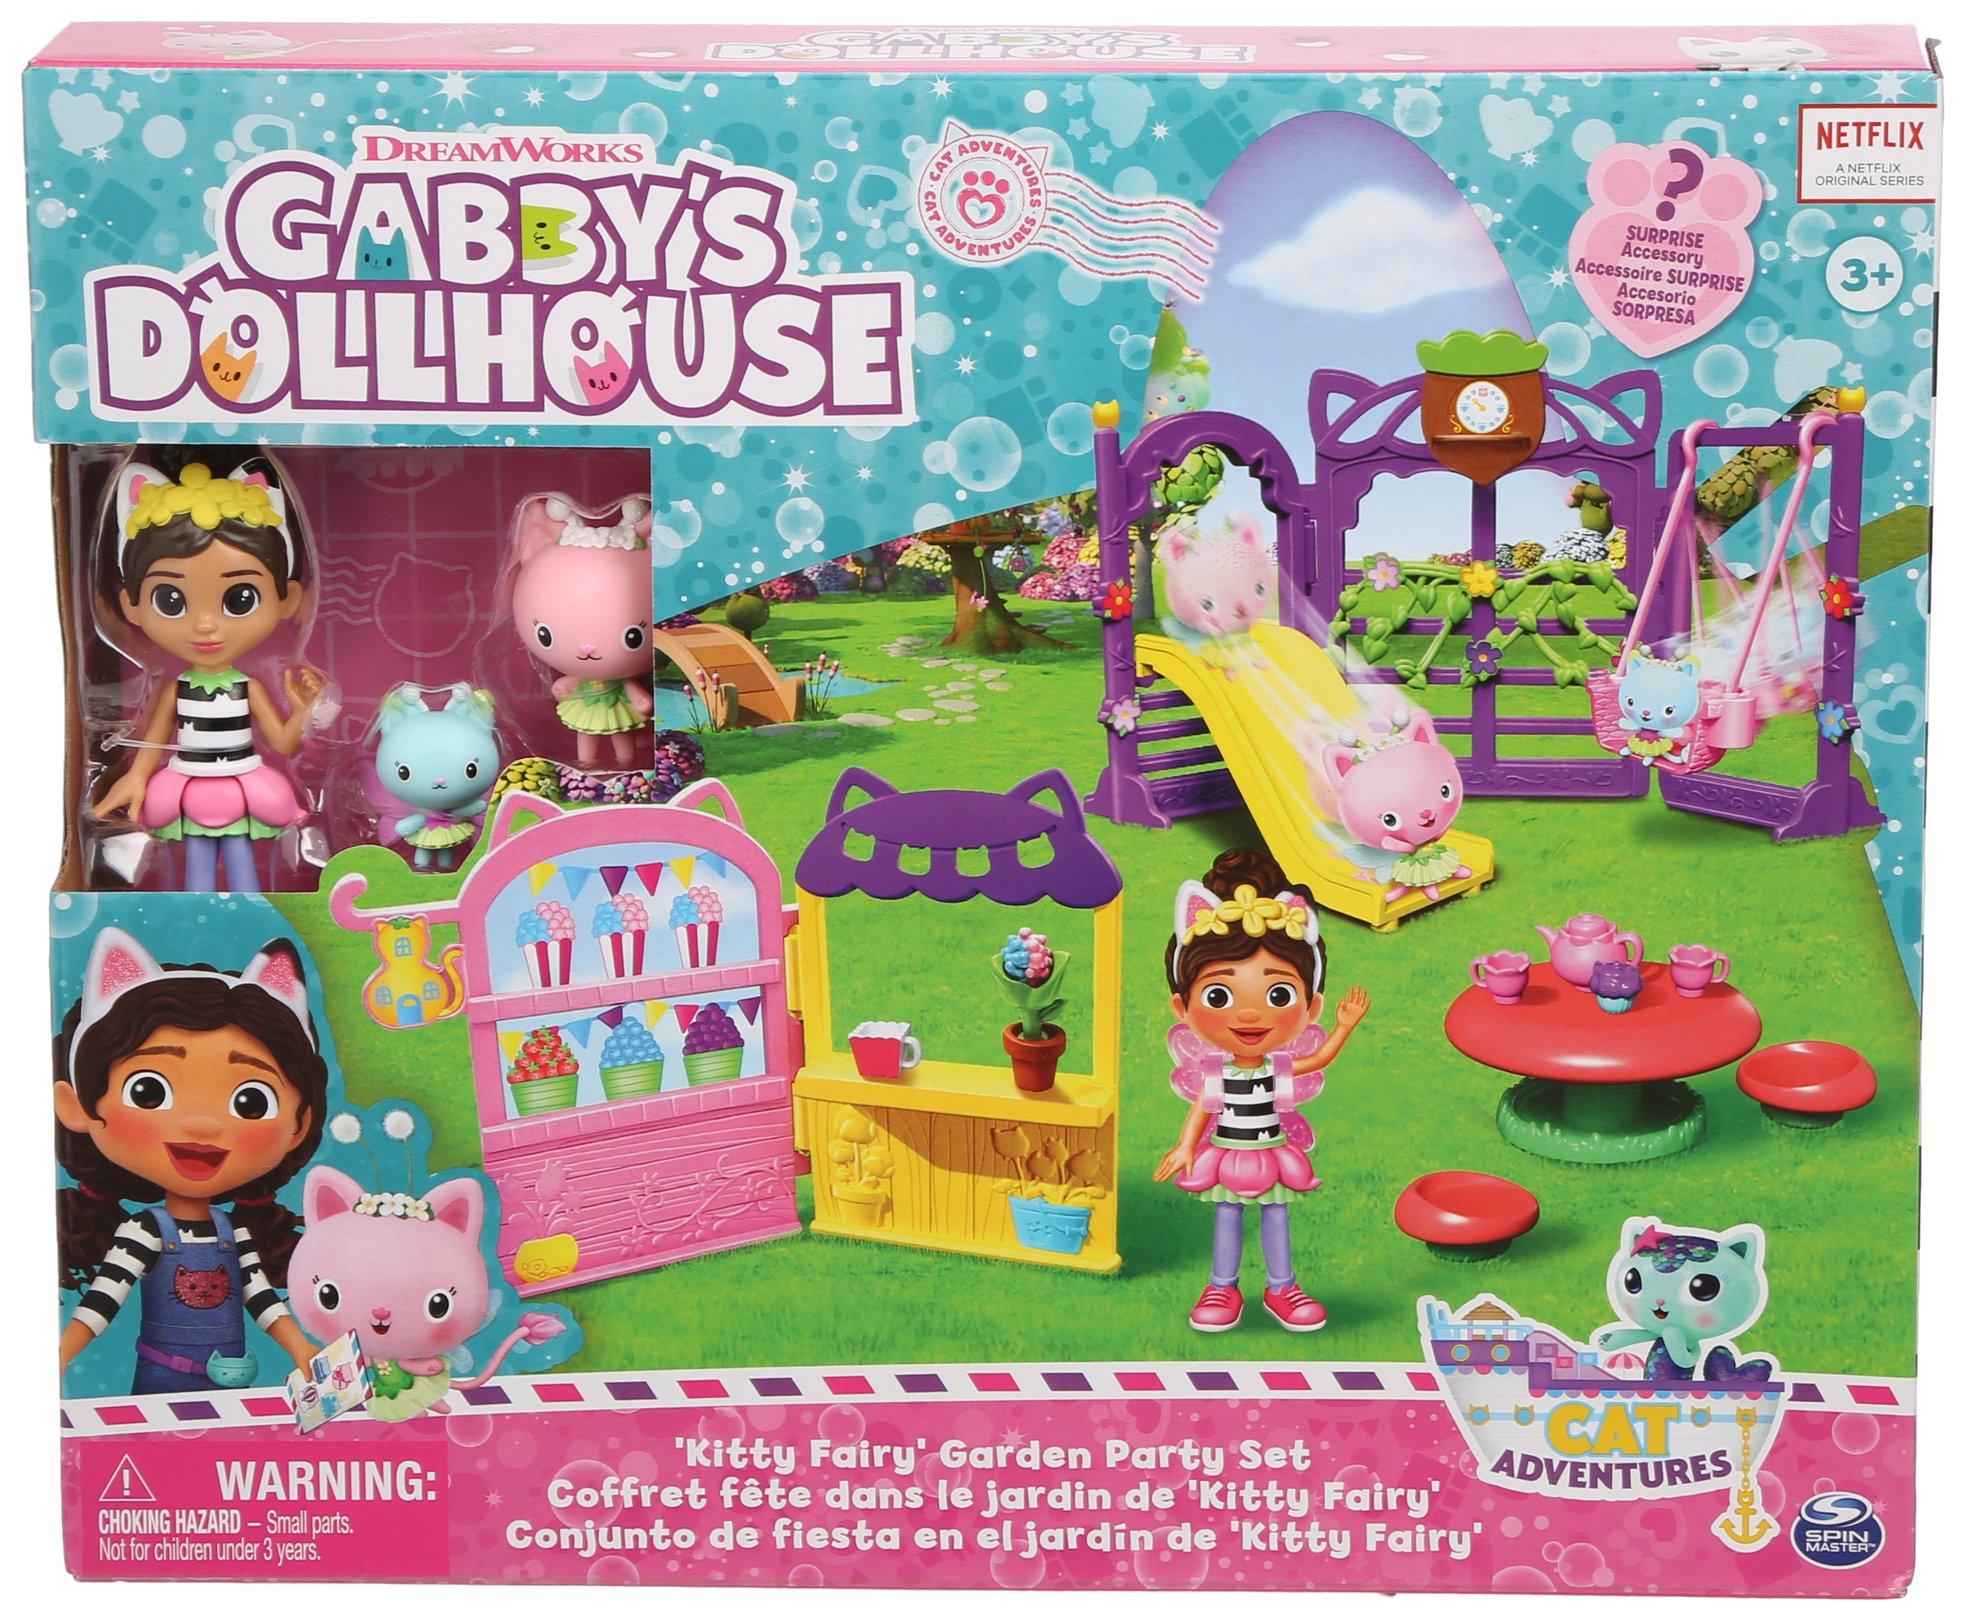 Gabby's Dollhouse Kitty Fairy Garden Party Set